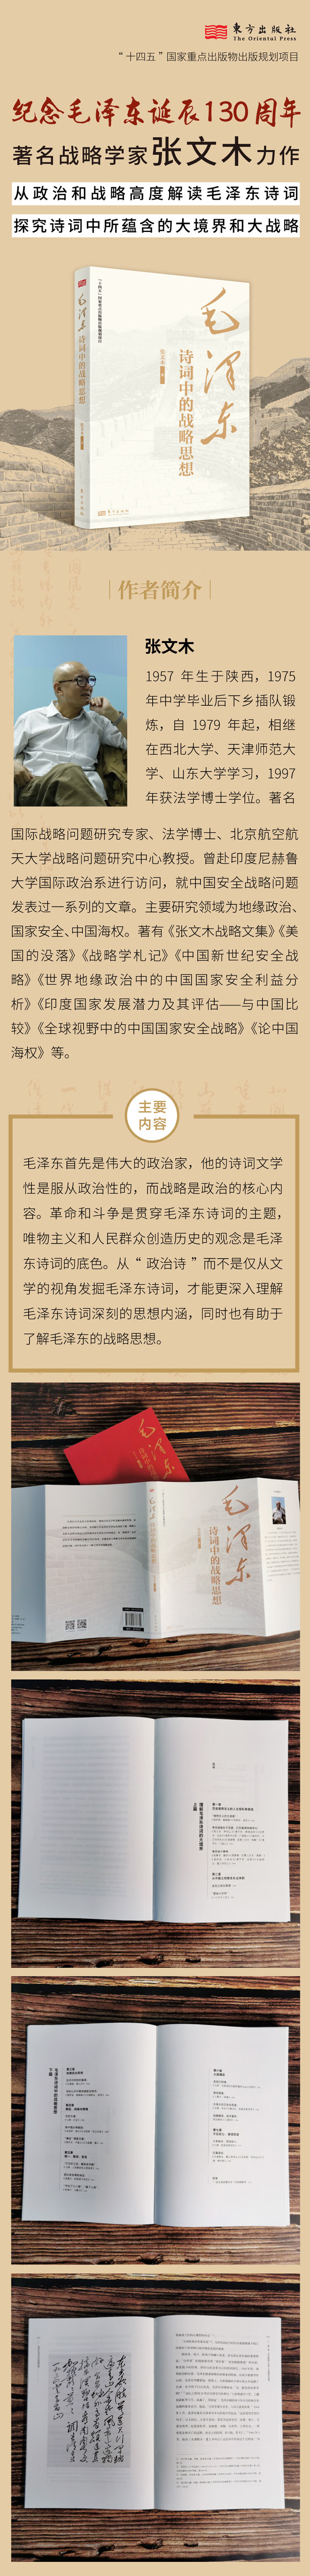 毛泽东诗词中的战略思想 张文木 著 东方出版社